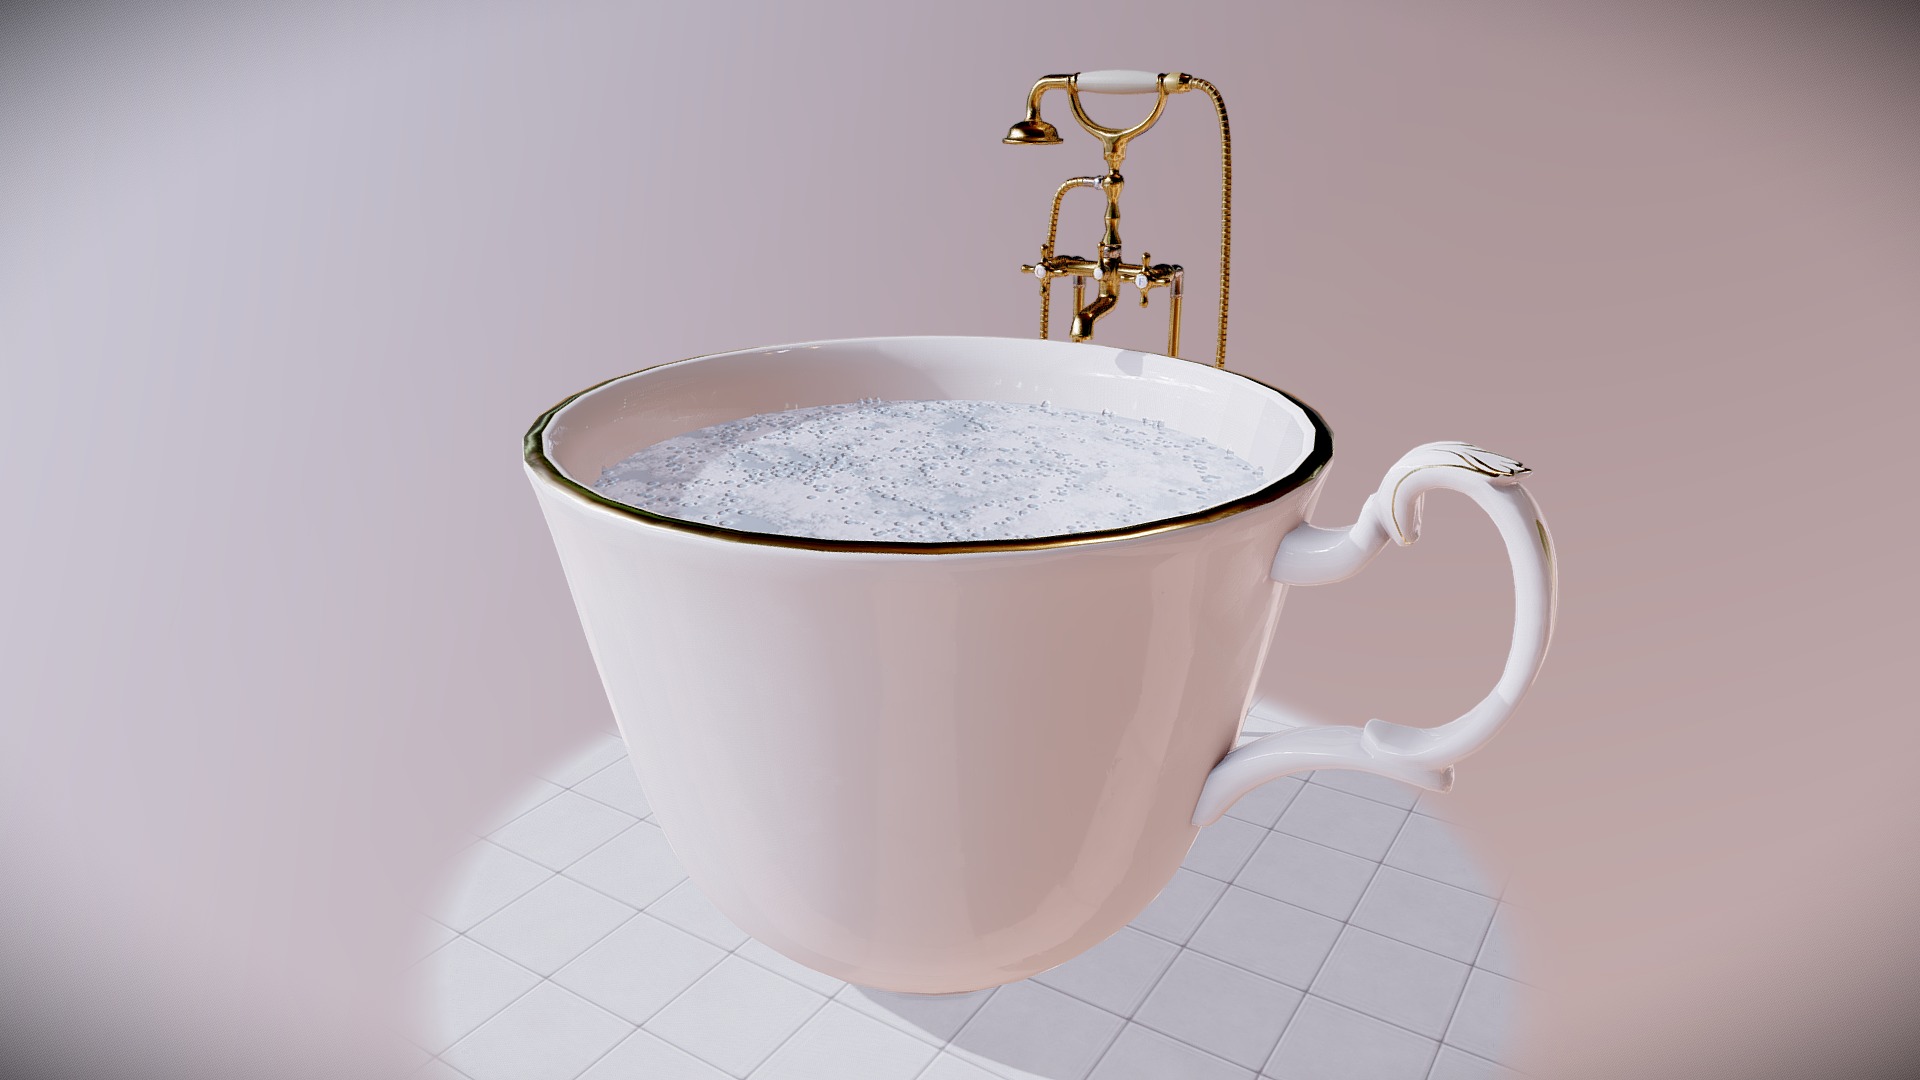 Petite idée que j'avais eu il y a quelques années, je l'ai enfin crée :) Le fabuleux mix baignoire et à tasse à café!
Liitle idea that i had been a few years ago, i finally created it :) The fabulous crossover between a bath and a coffee cup!

Logiciels / Softwares : 3ds max, Substance Painter - Tasse baignoire / Coffe cup bath - 3D model by Laura Gaillon (@LauraGaillon) 3d model